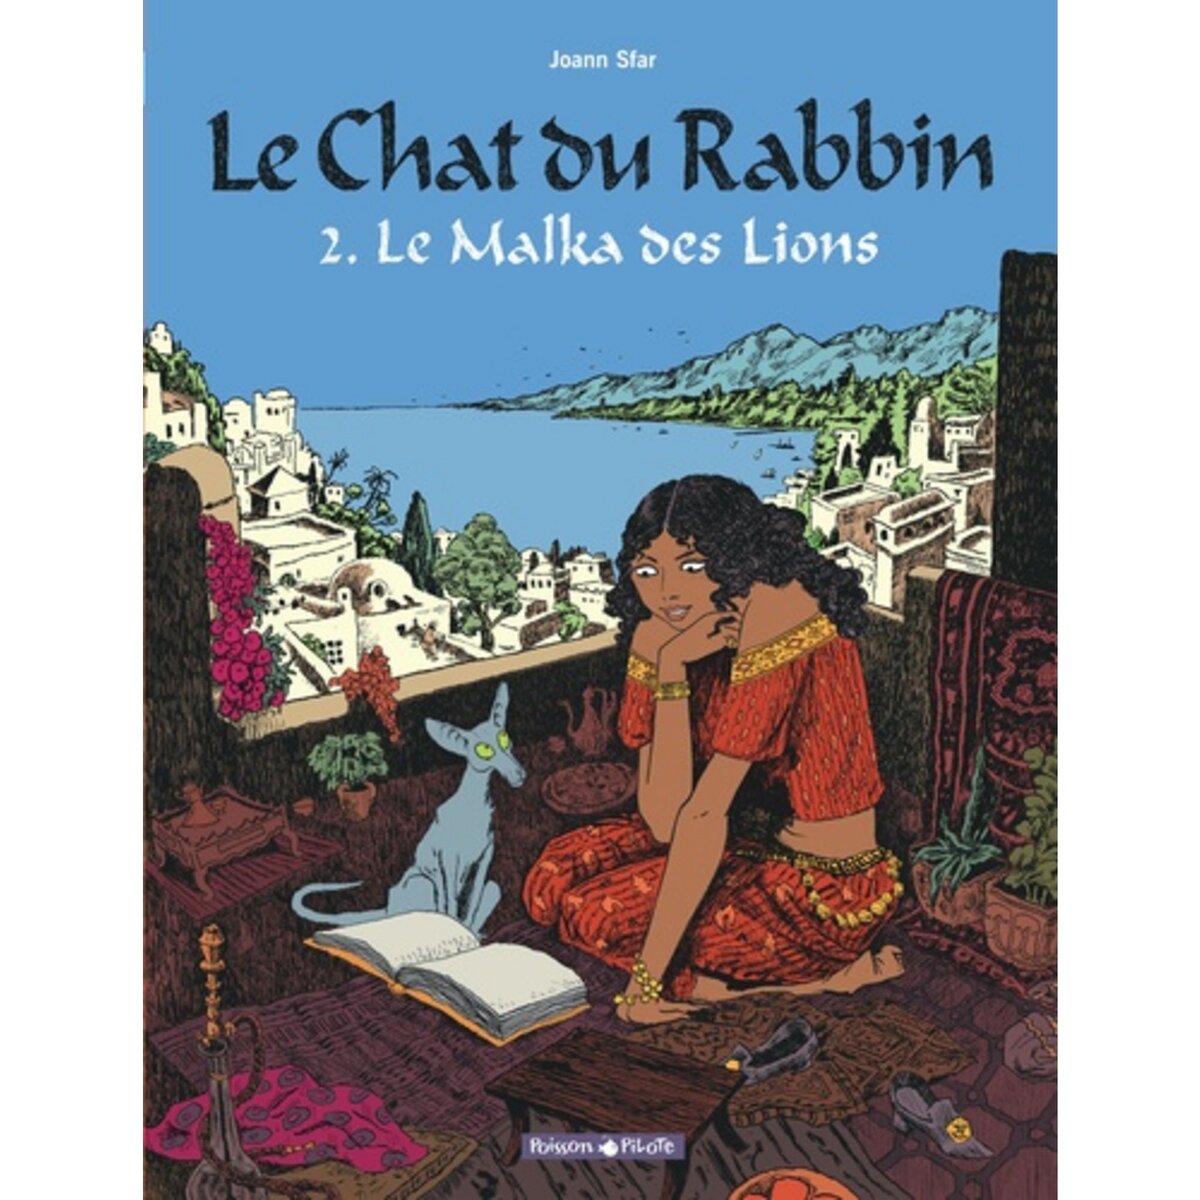  LE CHAT DU RABBIN TOME 2 : LE MALKA DES LIONS, Sfar Joann